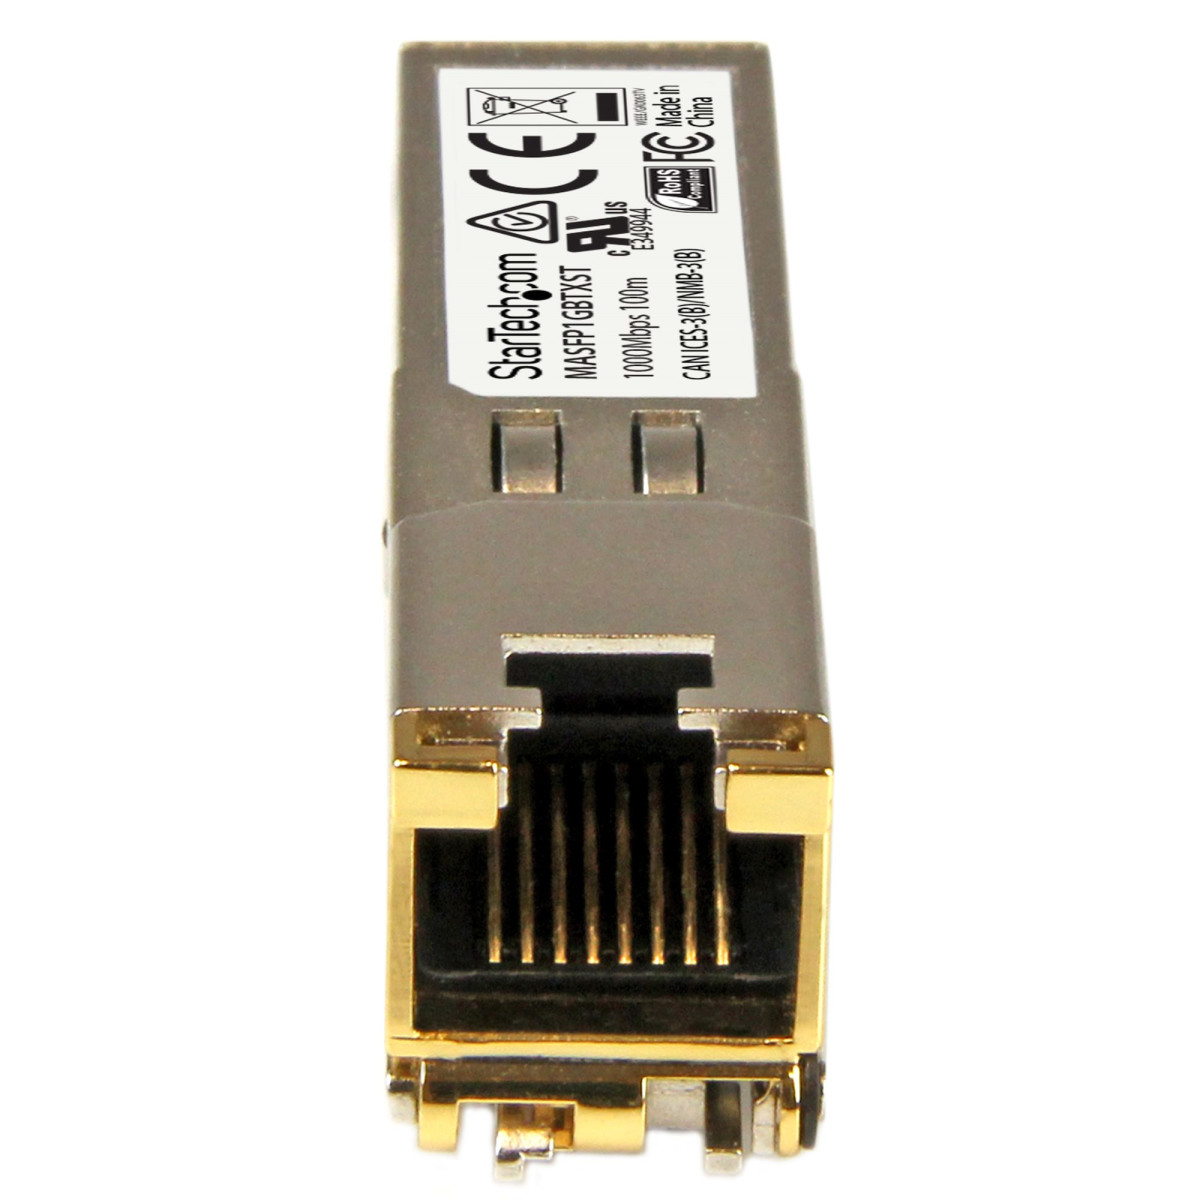 MA-SFP-1GB-TX 1000BaseT SFP Transceiver